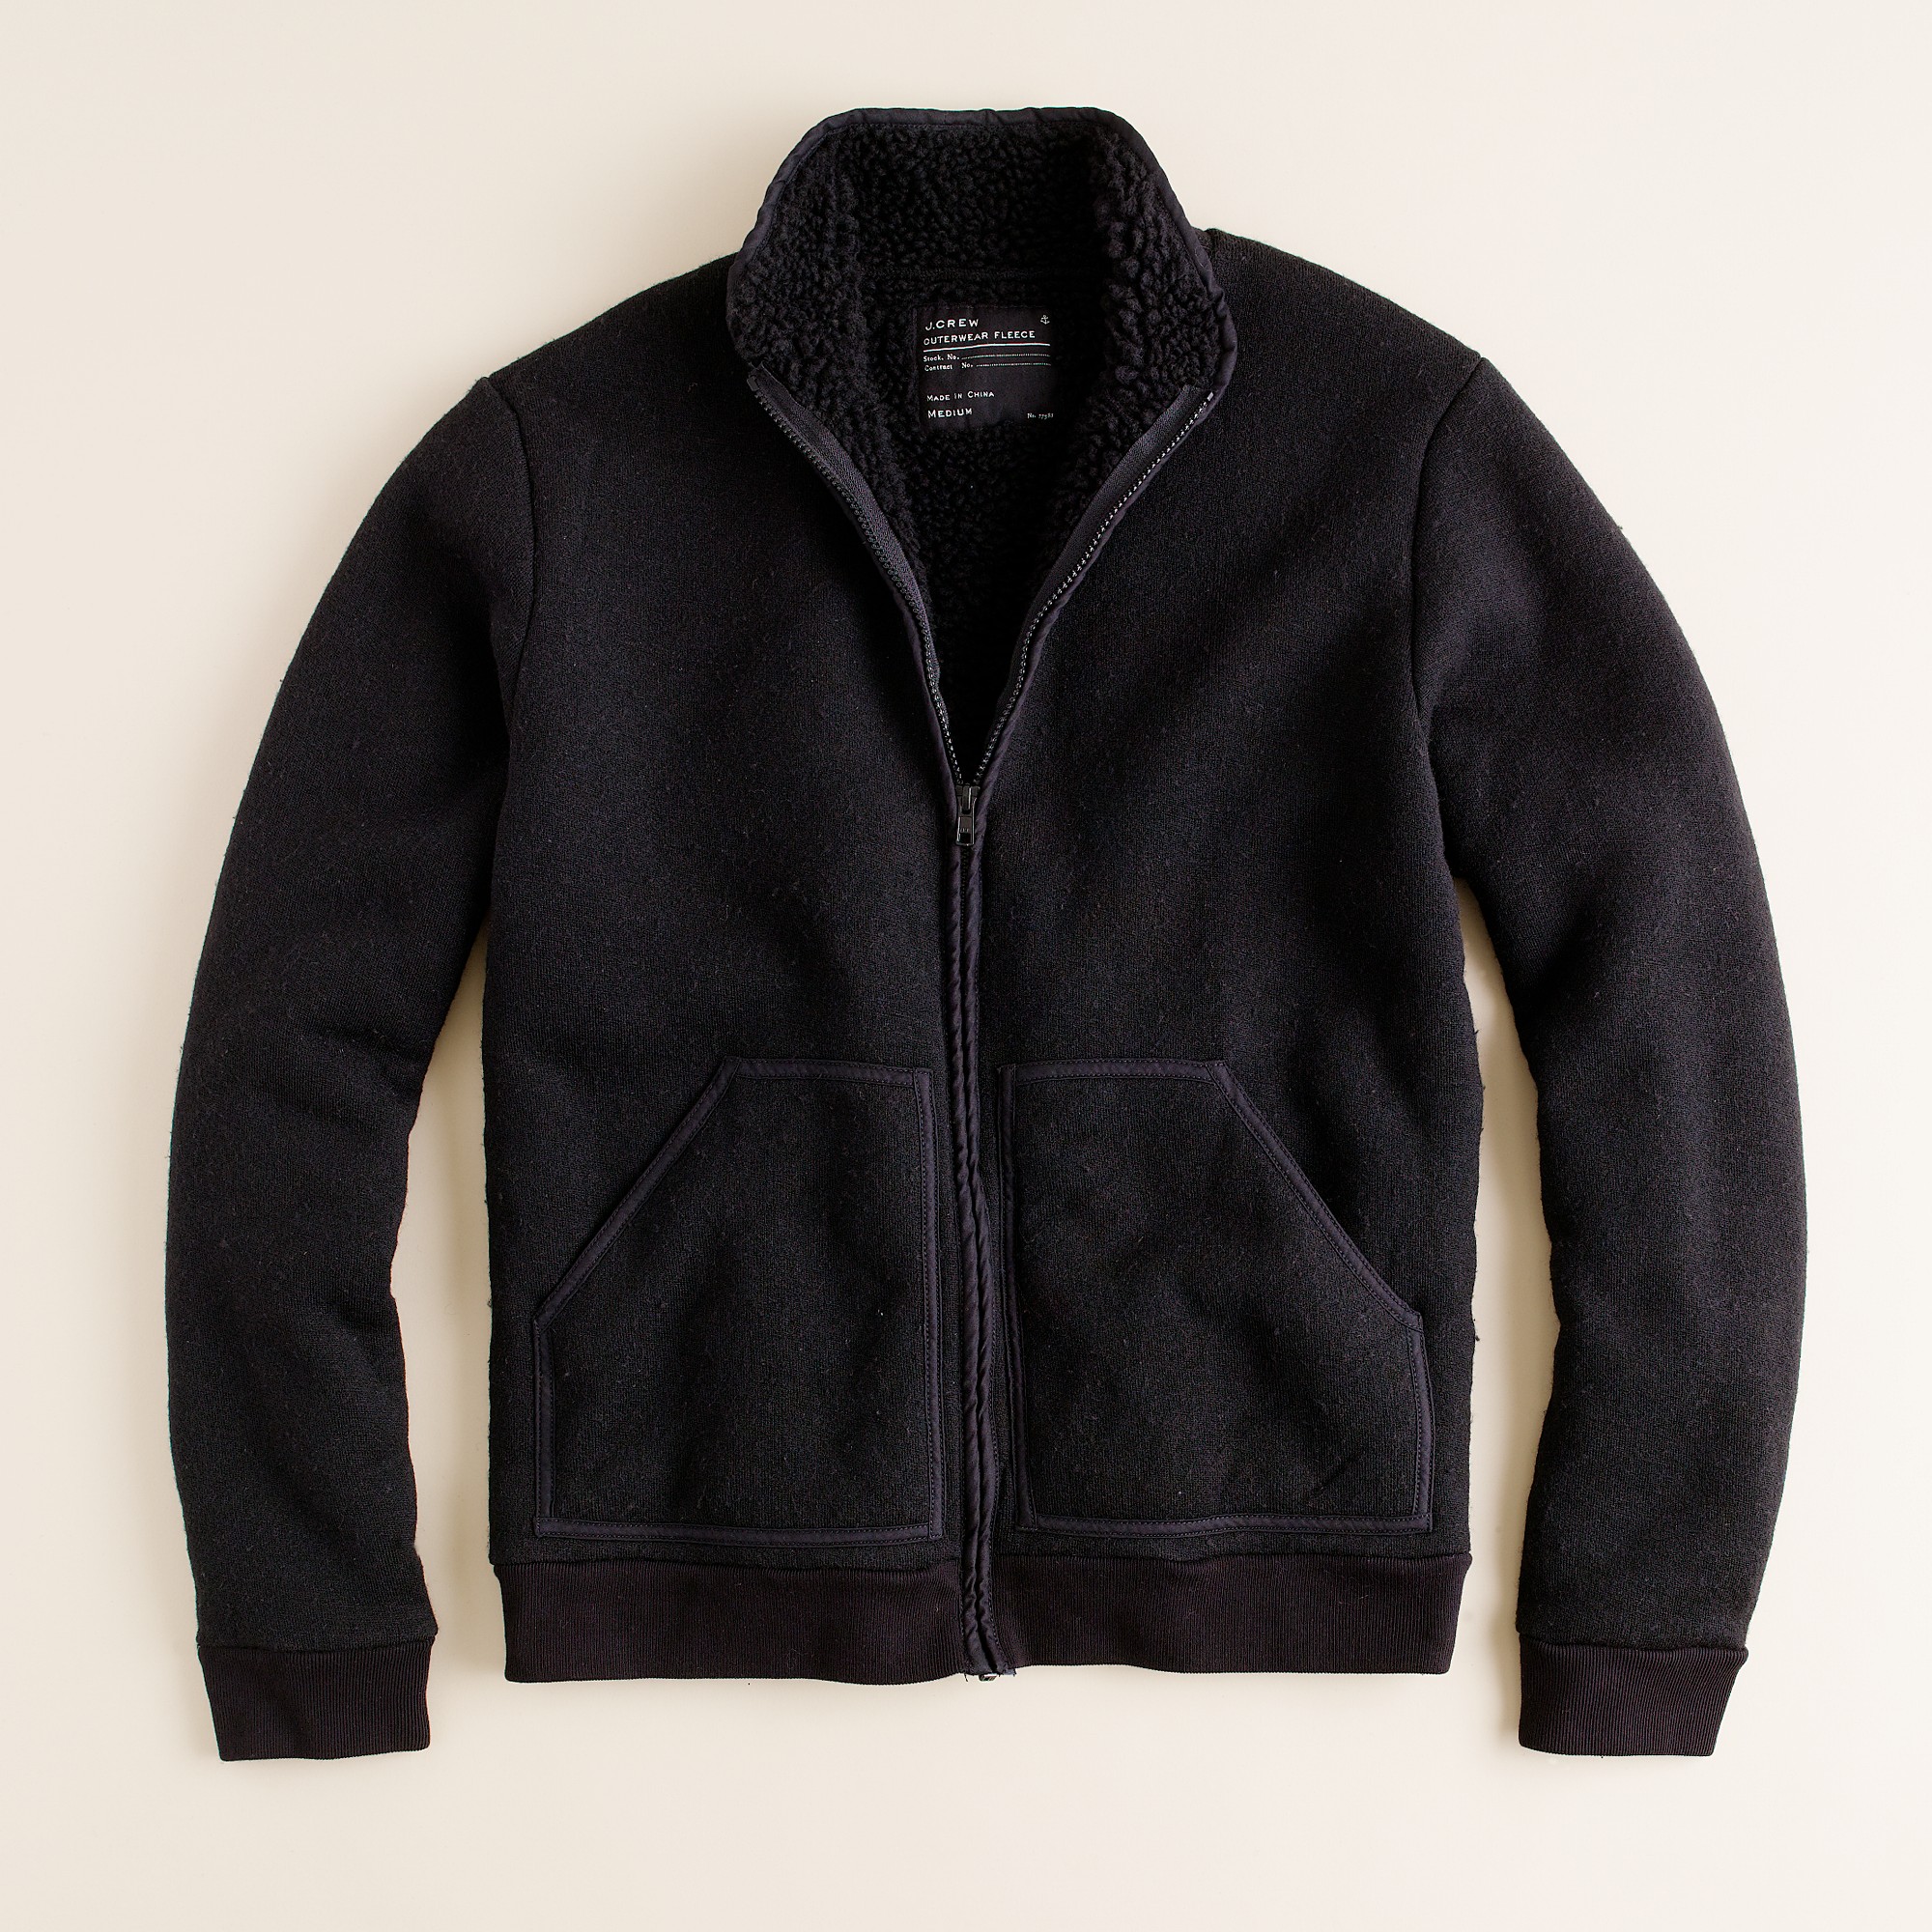 J.Crew Sherpa-lined Fleece Jacket in Black for Men - Lyst